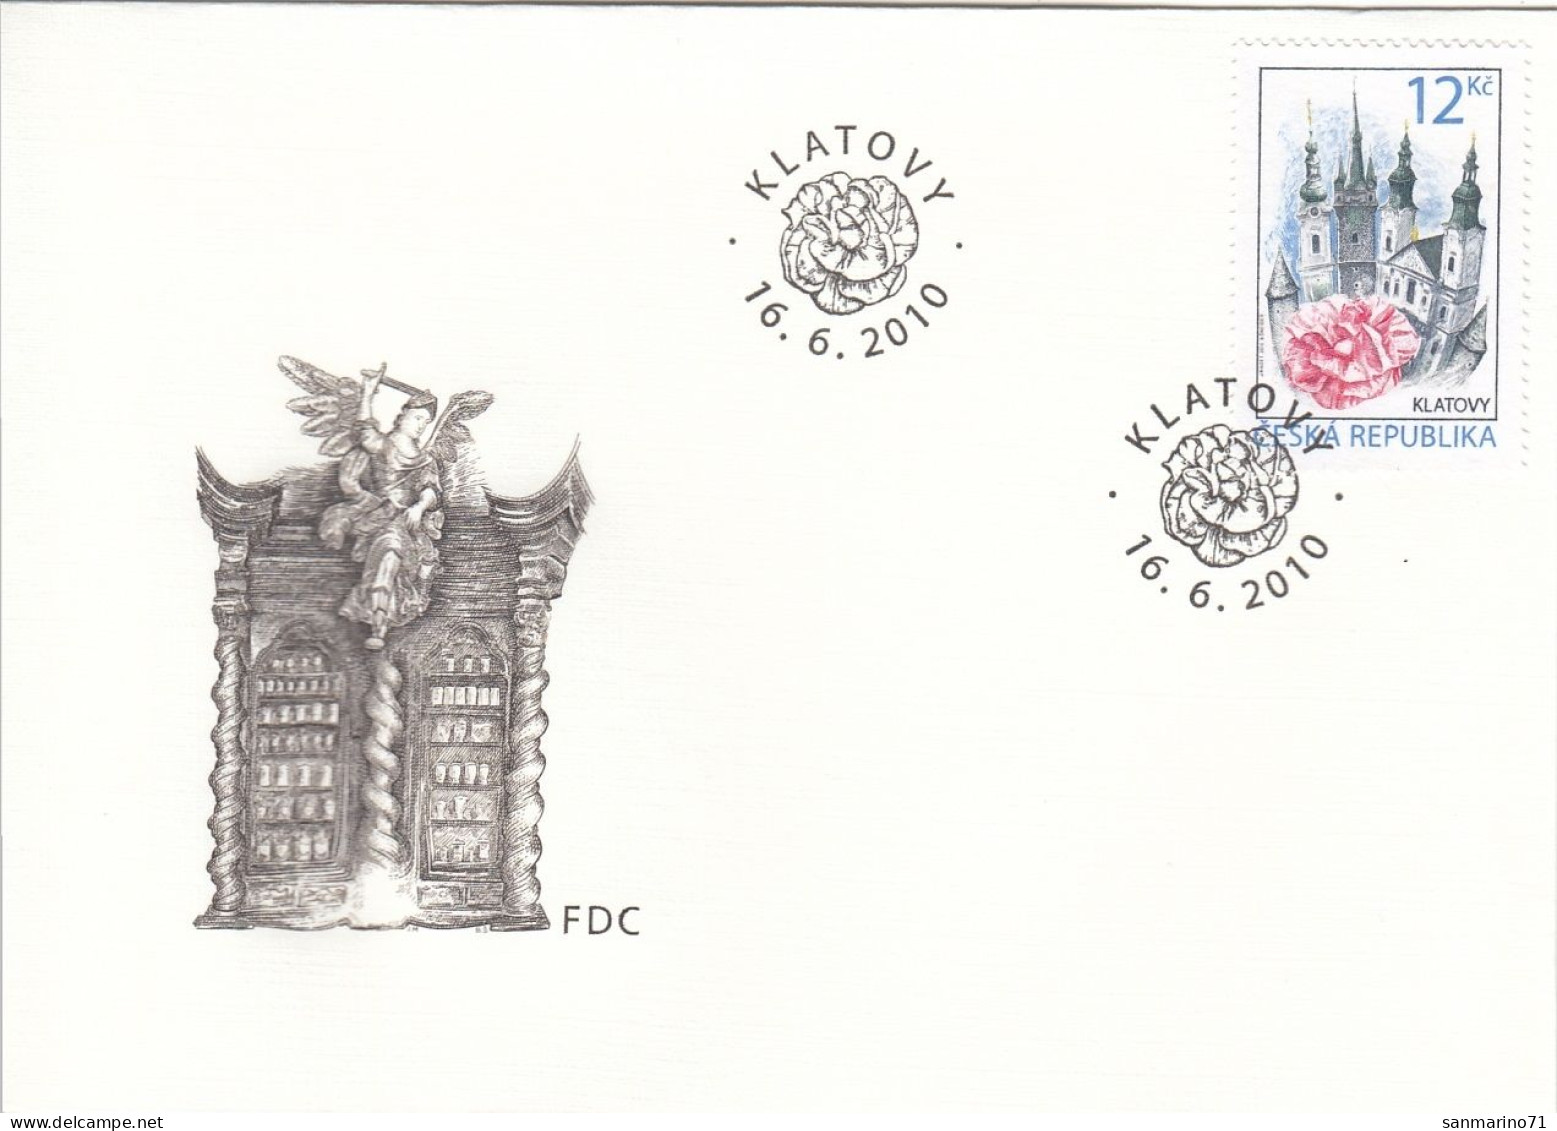 FDC CZECH REPUBLIC 636 - Chiese E Cattedrali